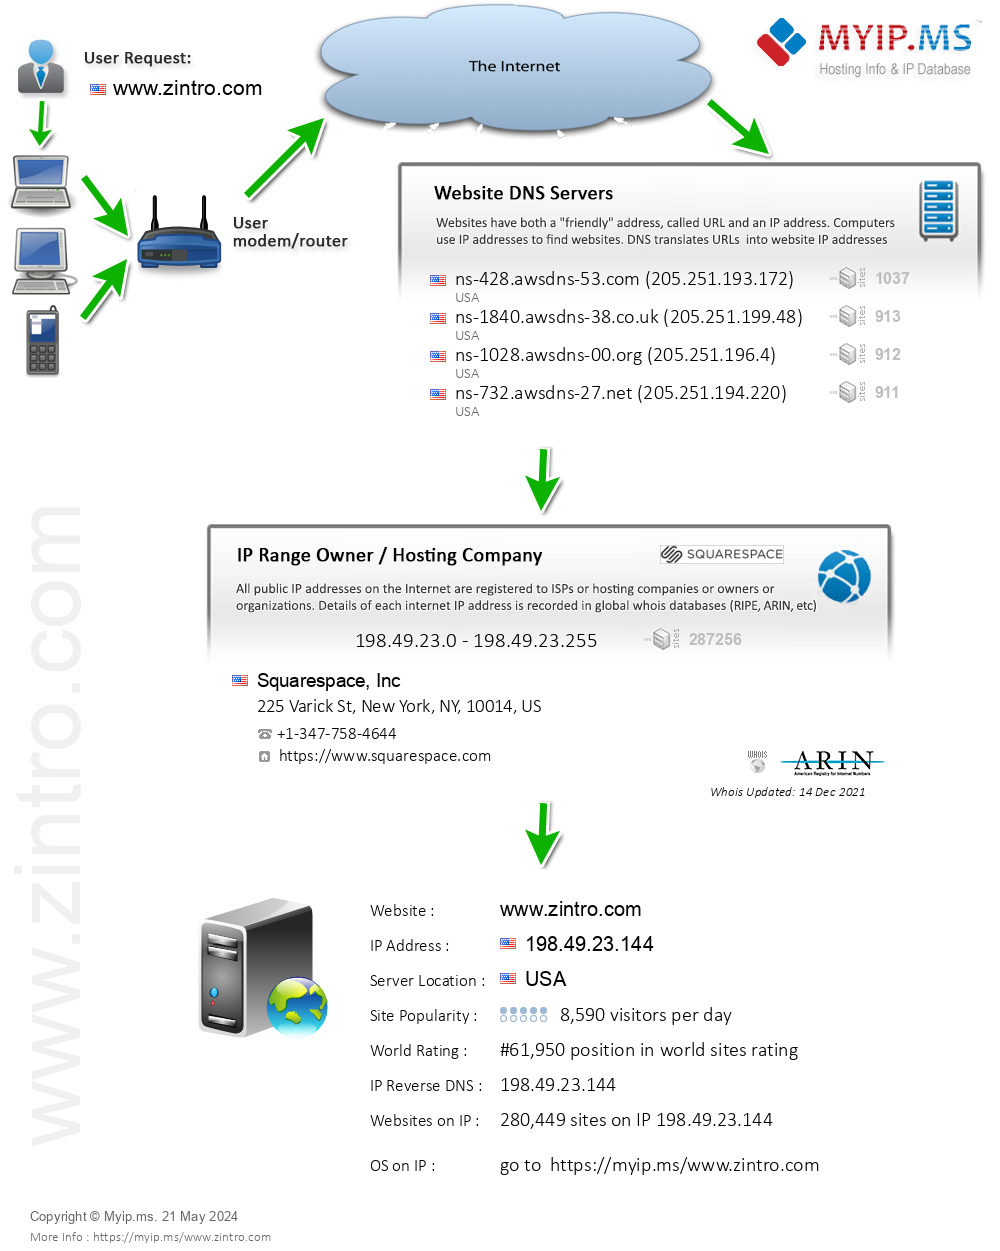 Zintro.com - Website Hosting Visual IP Diagram